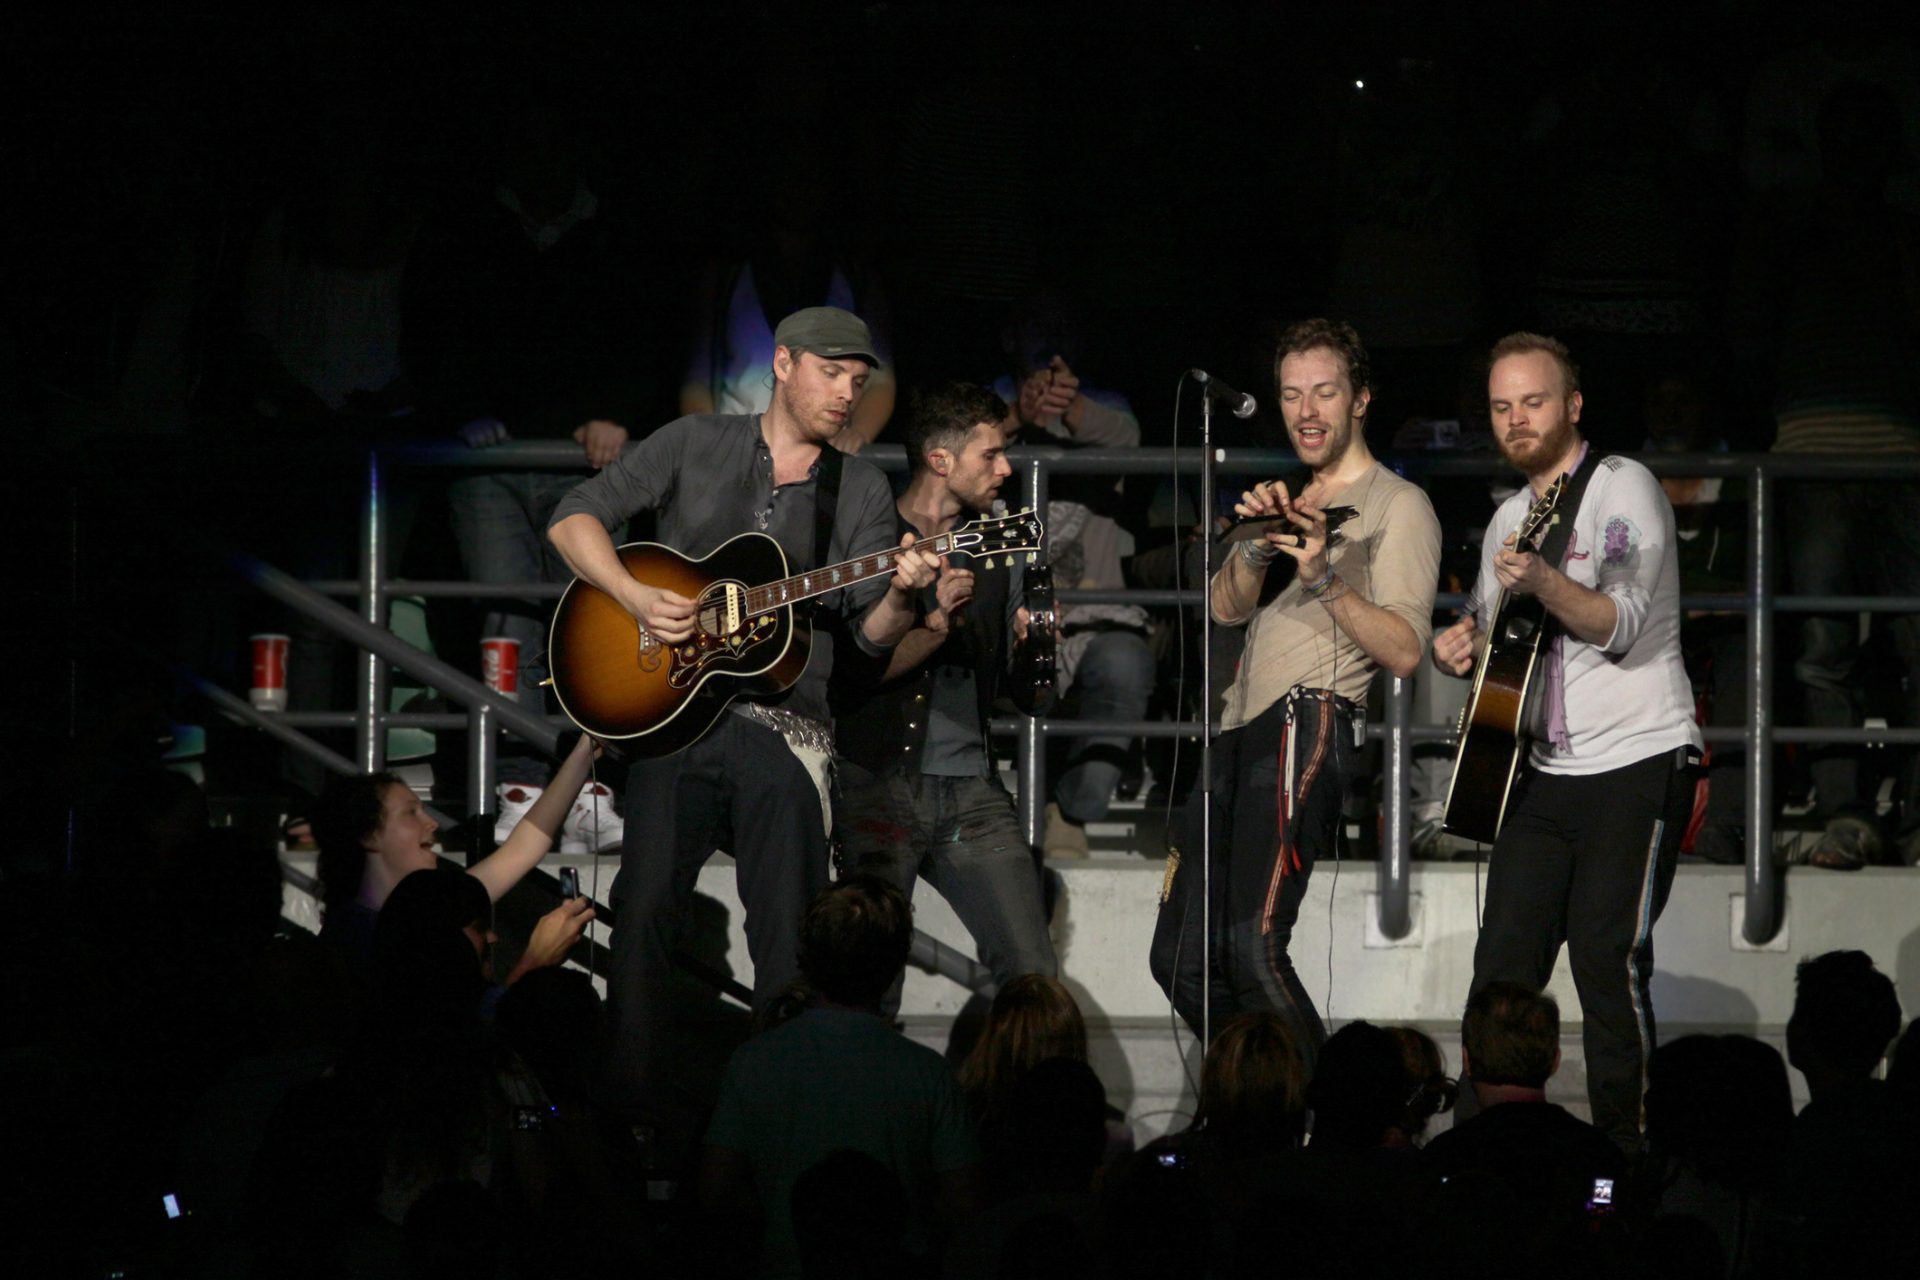 Procura por concertos da banda Coldplay atinge números inéditos em Portugal